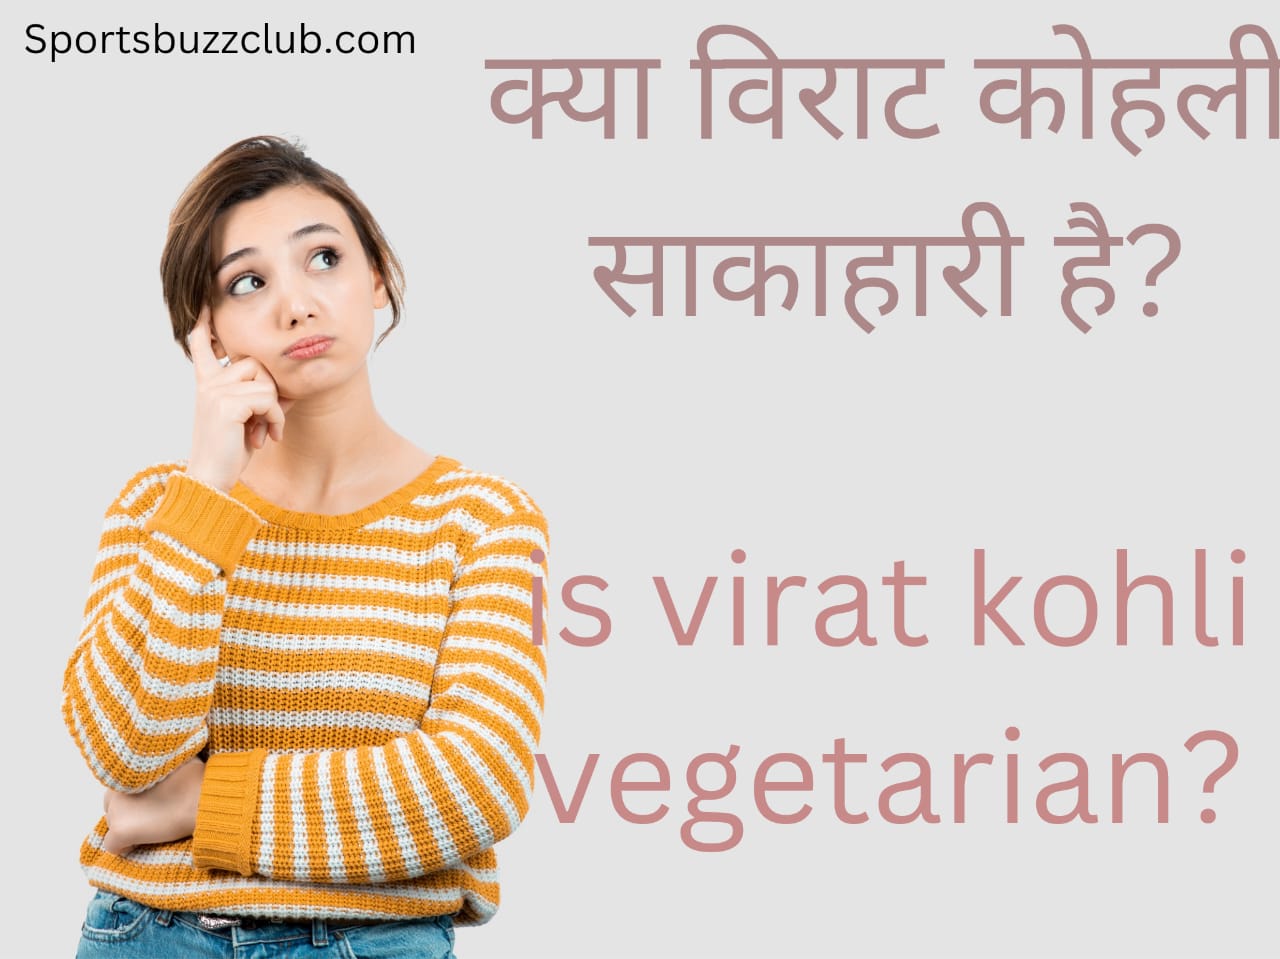 क्या विराट कोहली साकाहारी है?